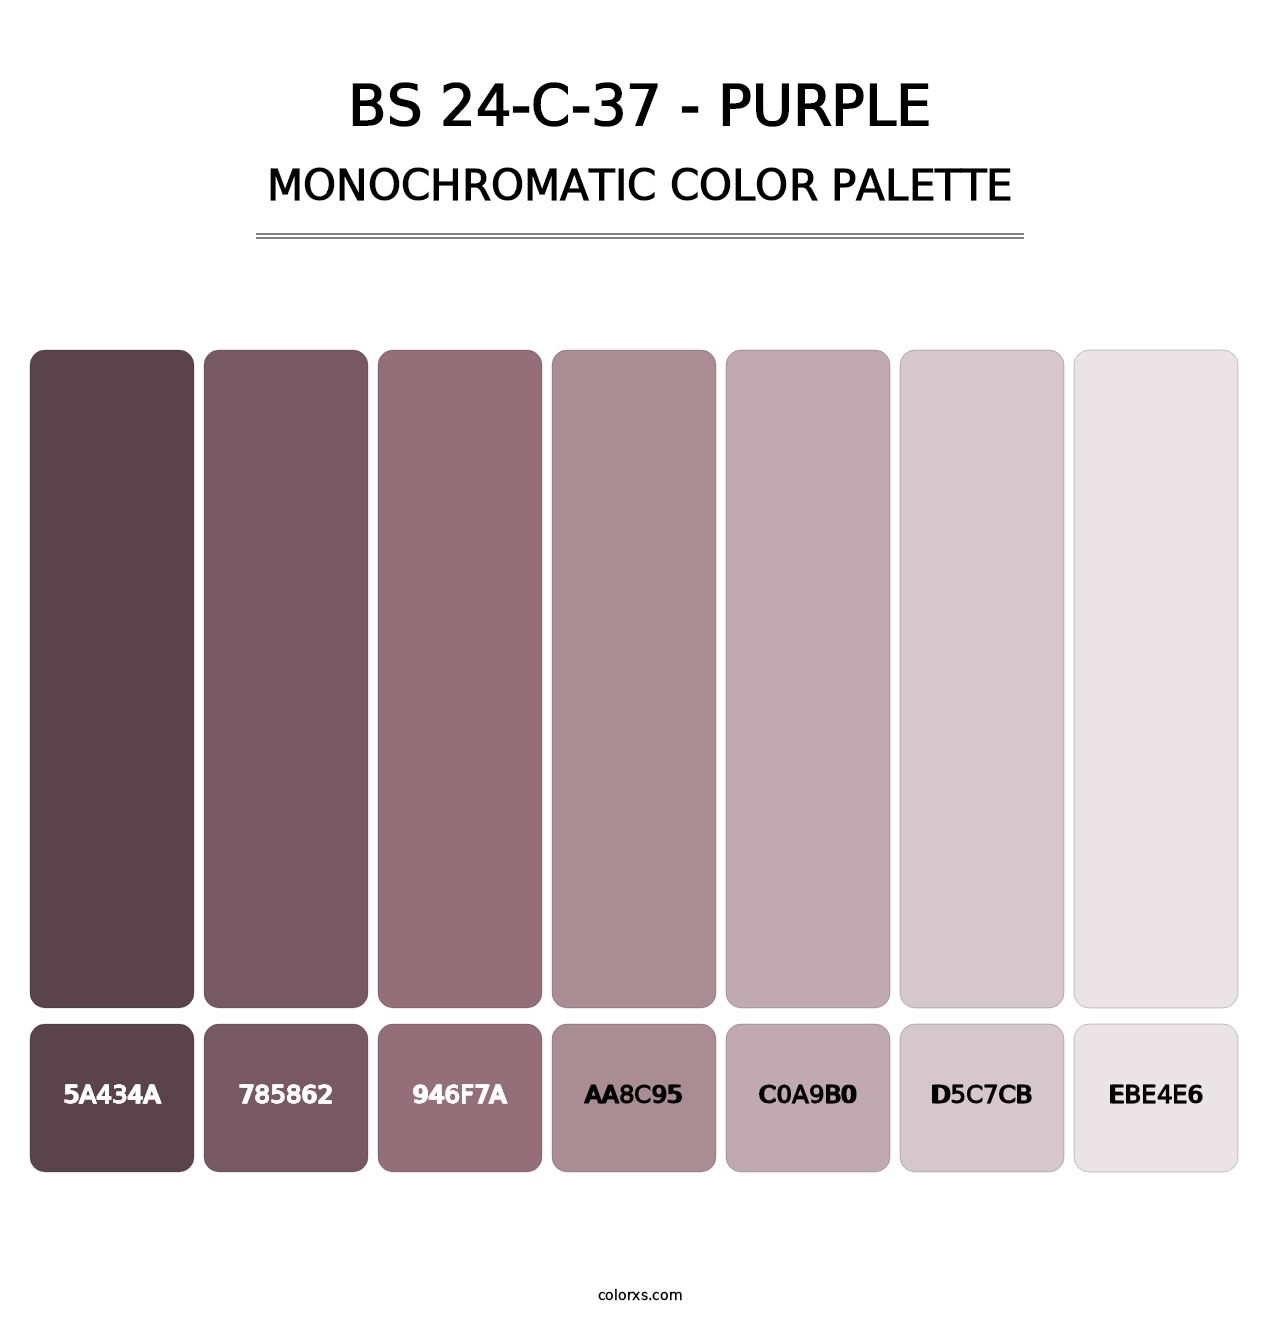 BS 24-C-37 - Purple - Monochromatic Color Palette